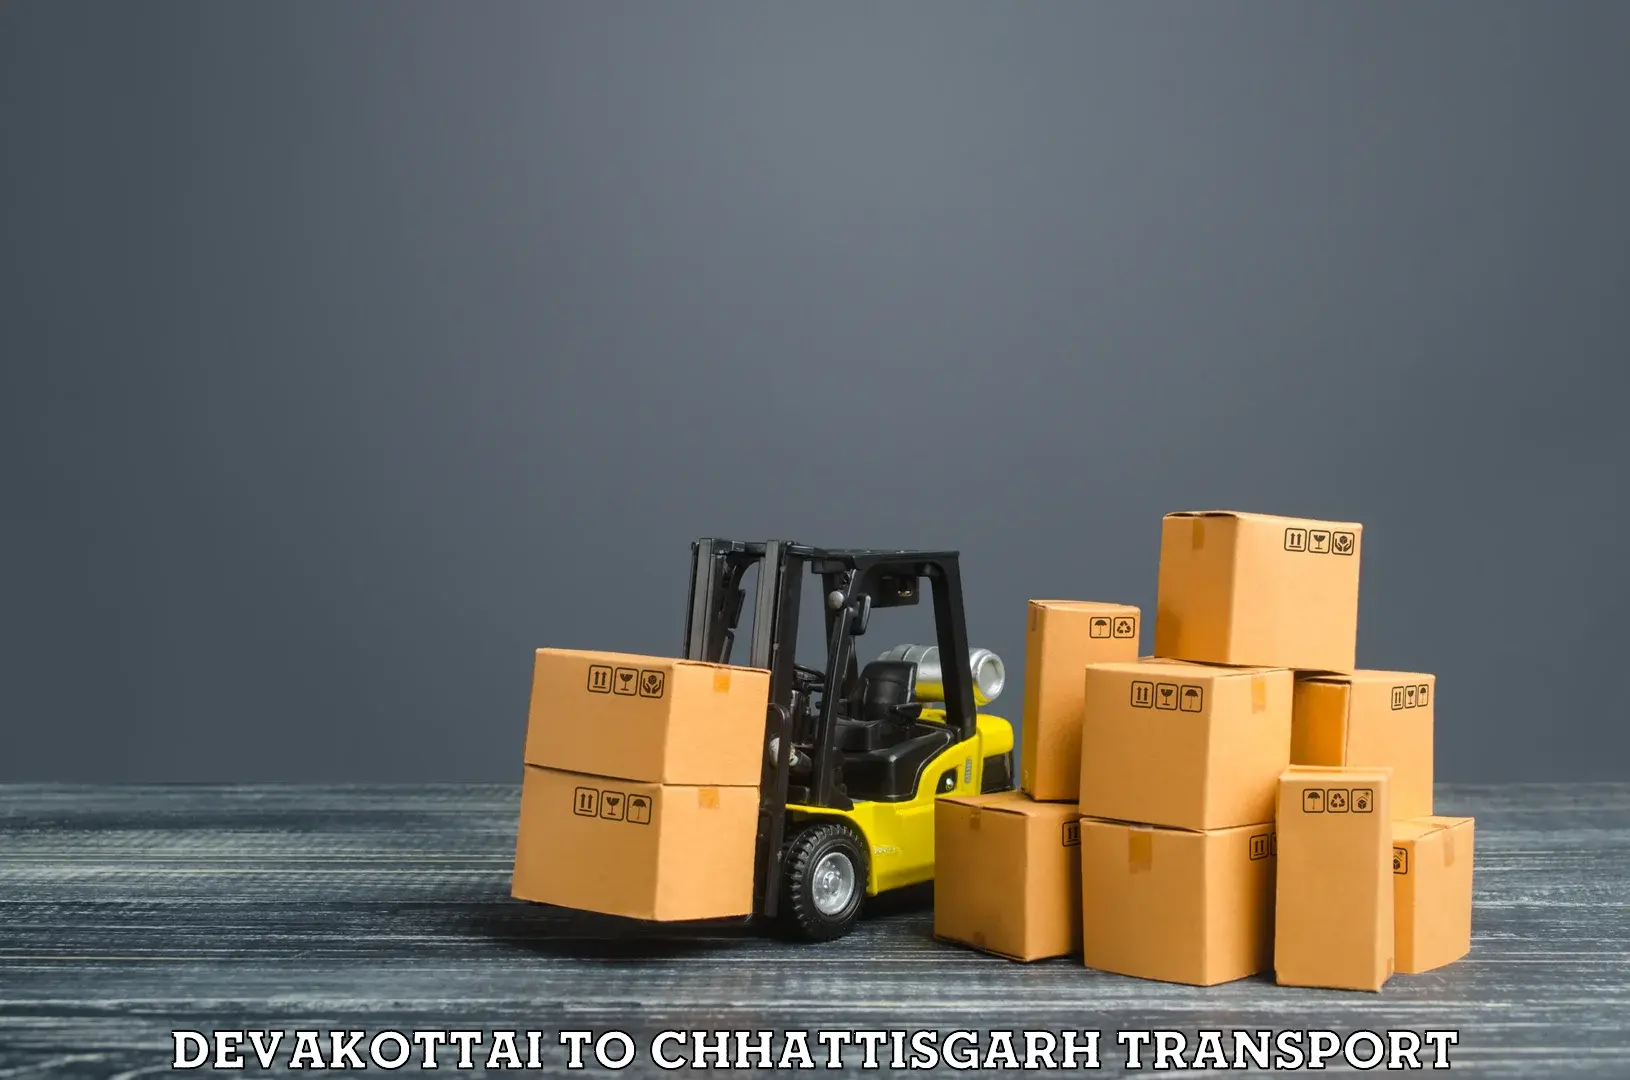 Vehicle parcel service Devakottai to Bilaspur